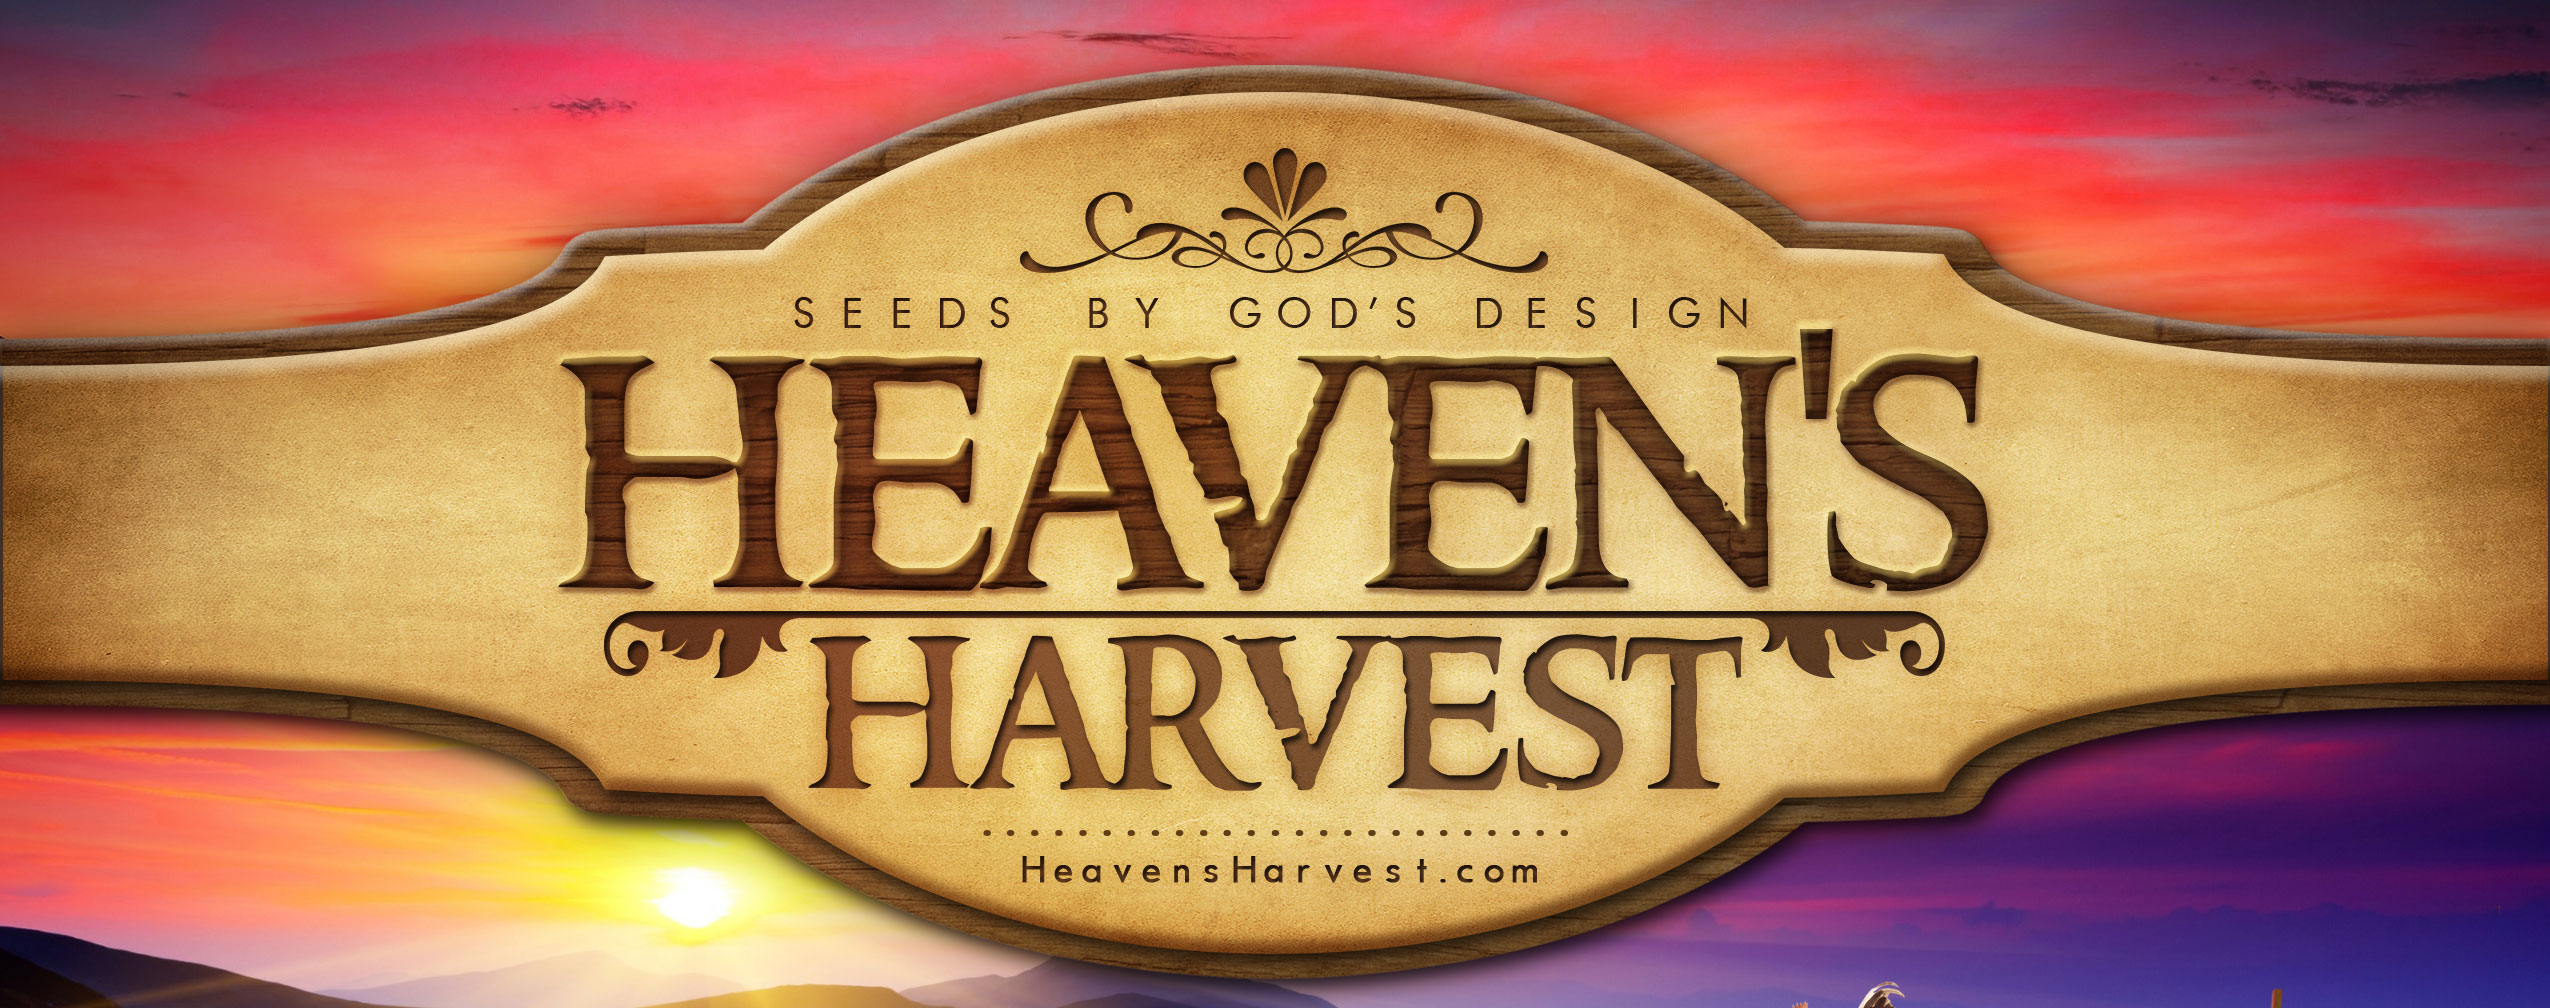 HeavensHarvest-index_01